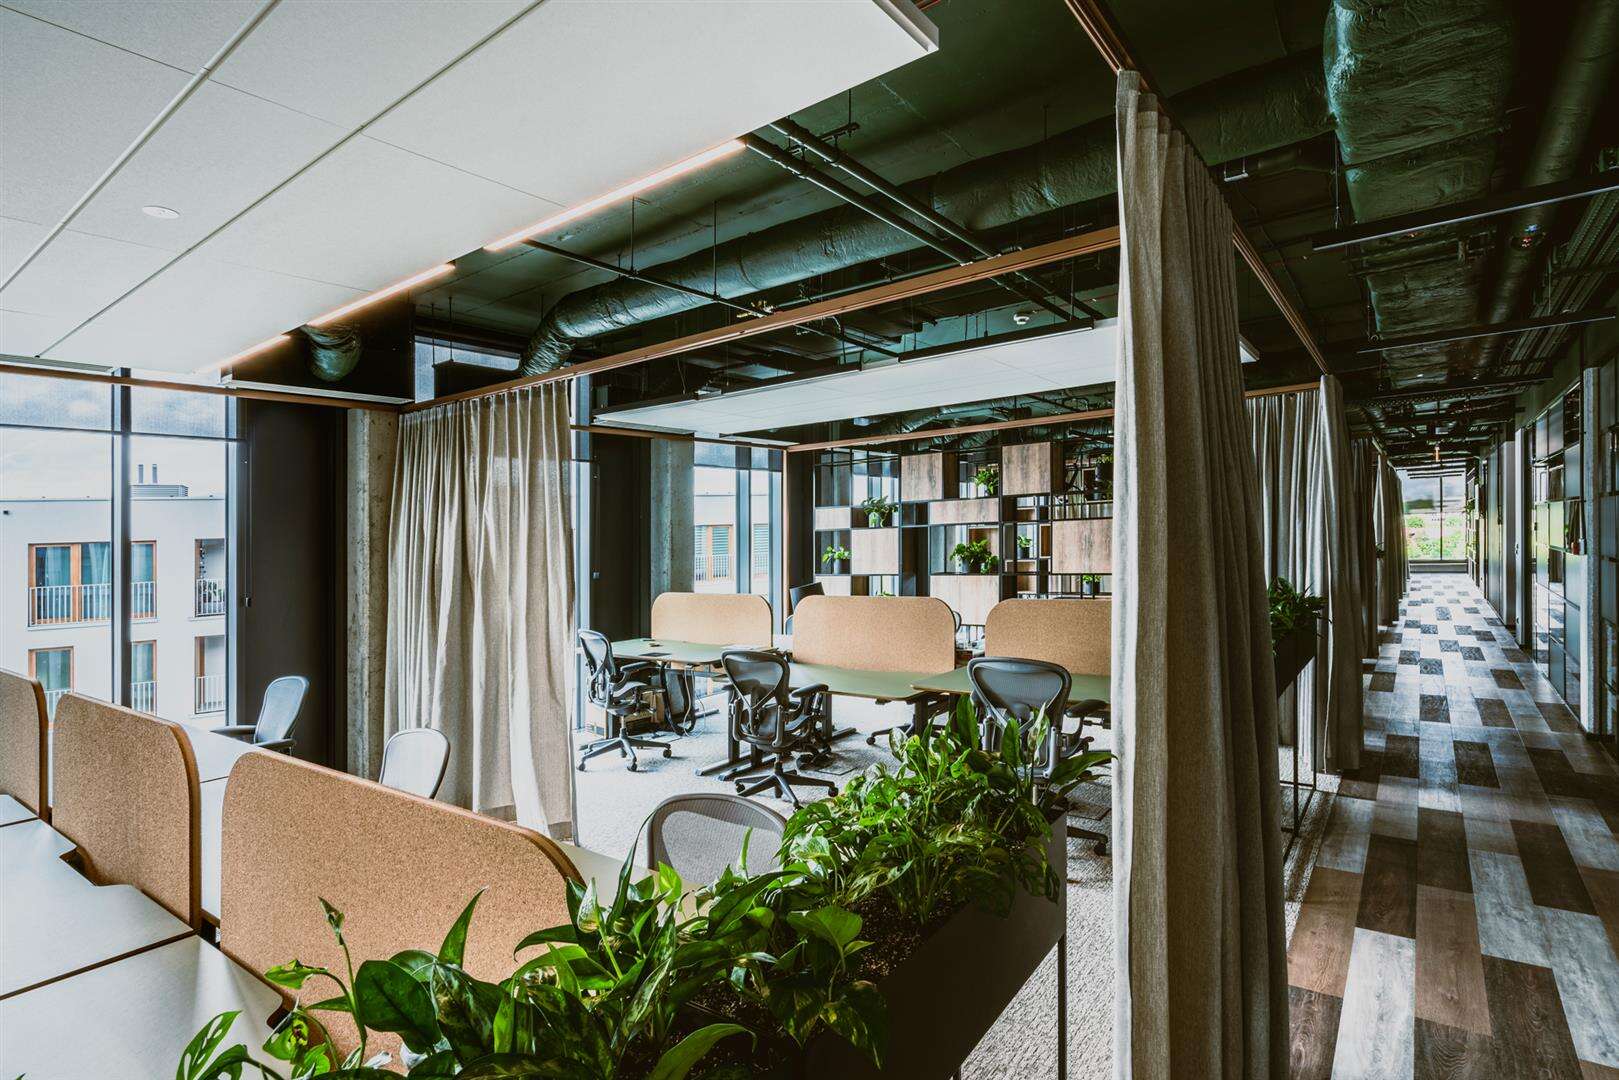 Korkové příčky, rostliny a zeleně natřené stropy vnášejí na pracoviště společností Syzygy a Ars Thanea v polské Varšavě venkovní prostor.